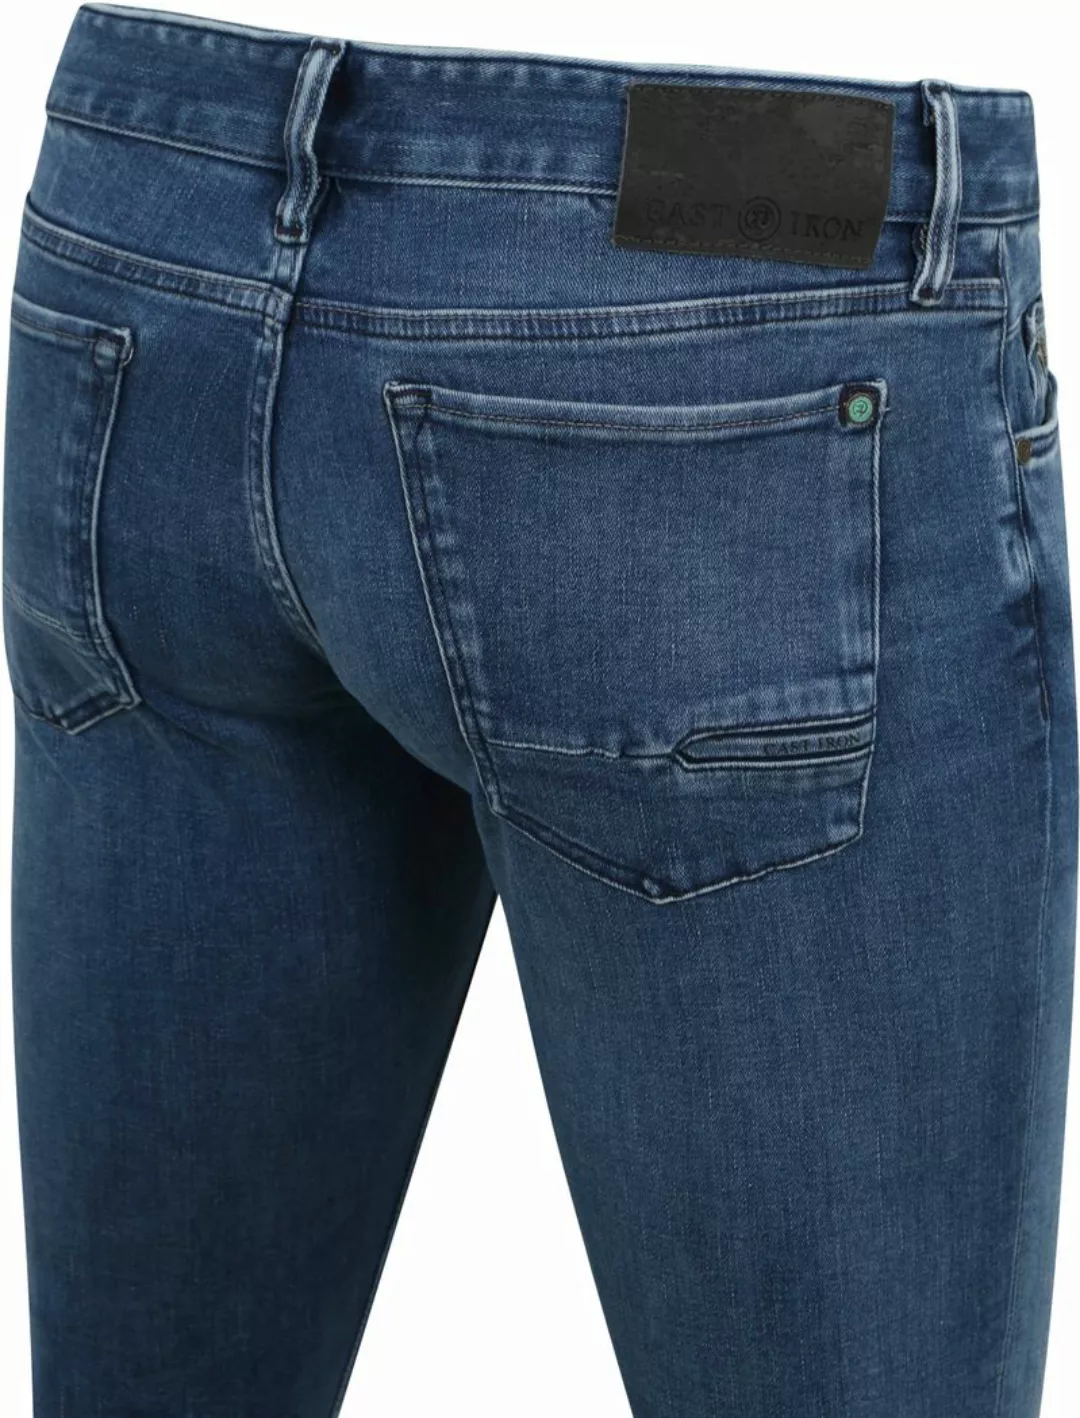 Cast Iron Riser Jeans Blau IIW - Größe W 36 - L 34 günstig online kaufen